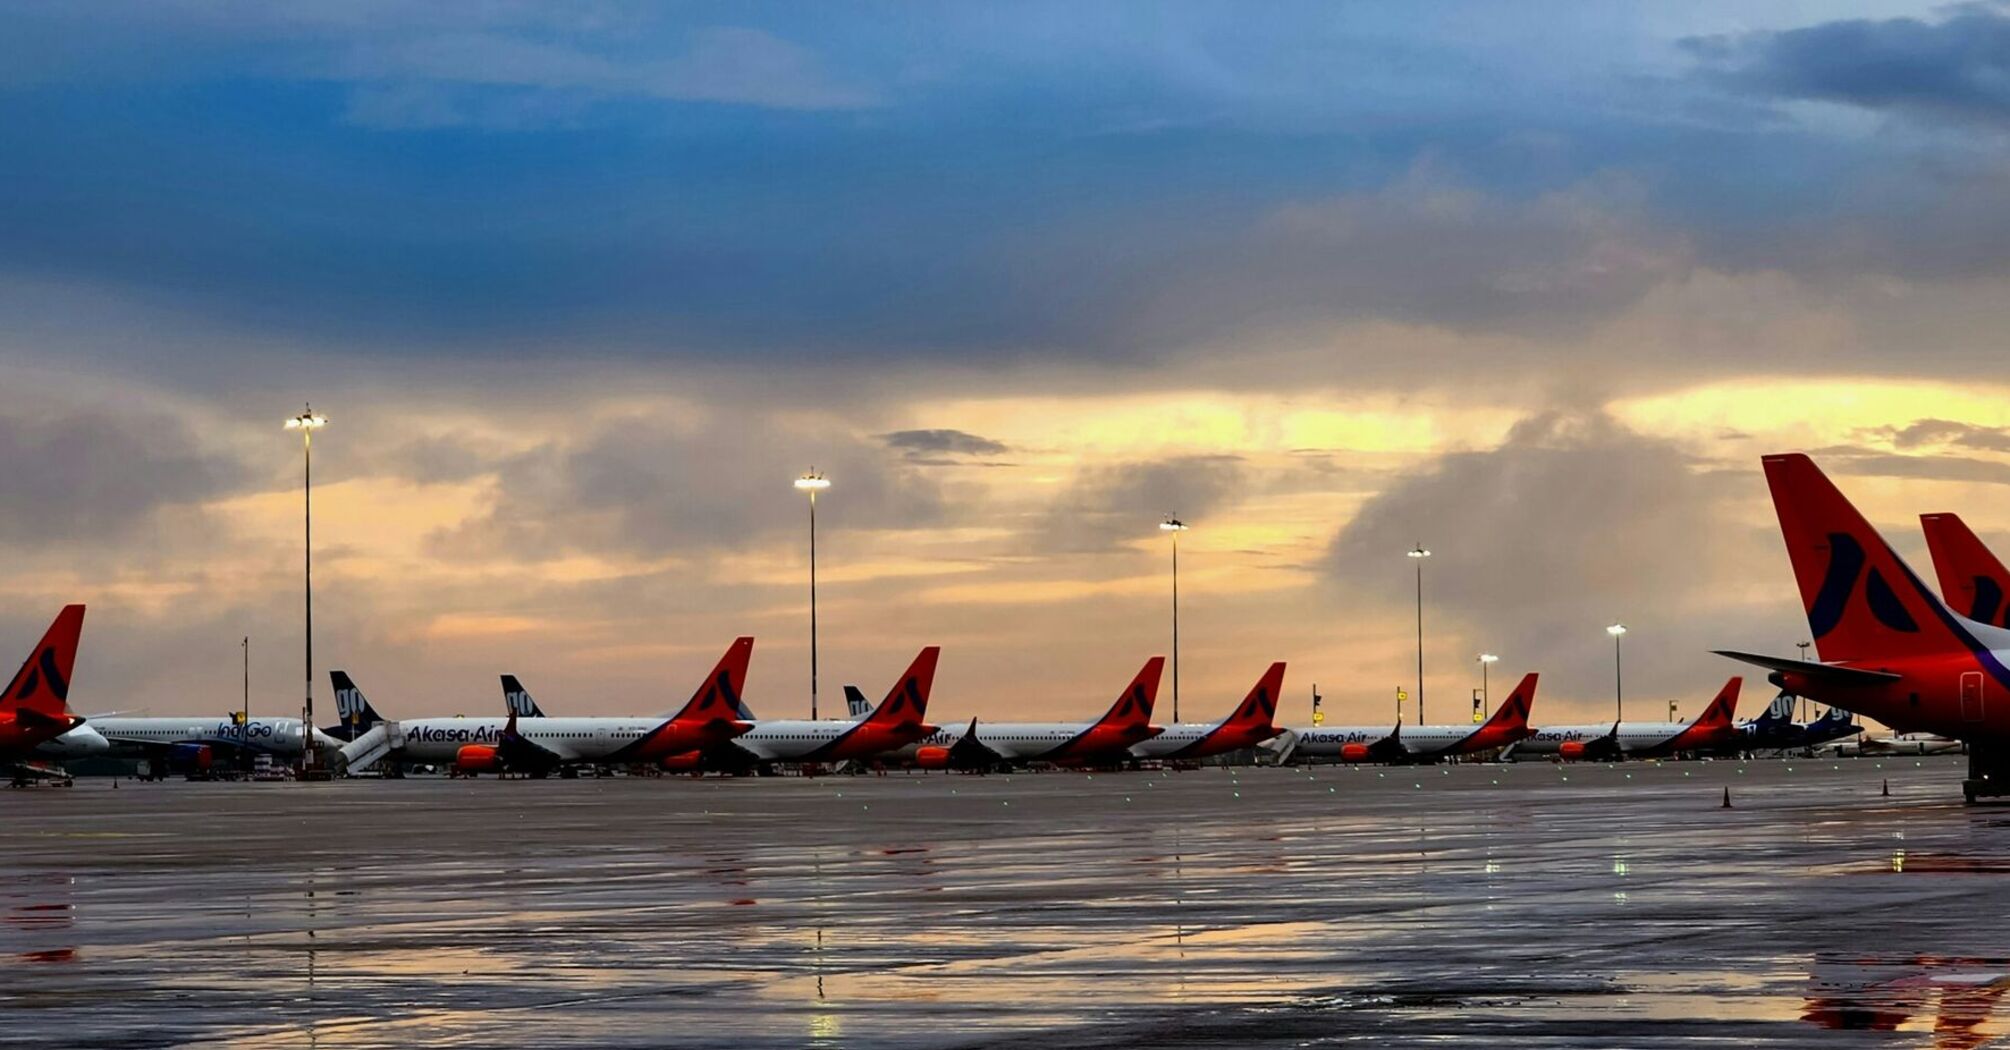 A row of Akasa Air airplanes